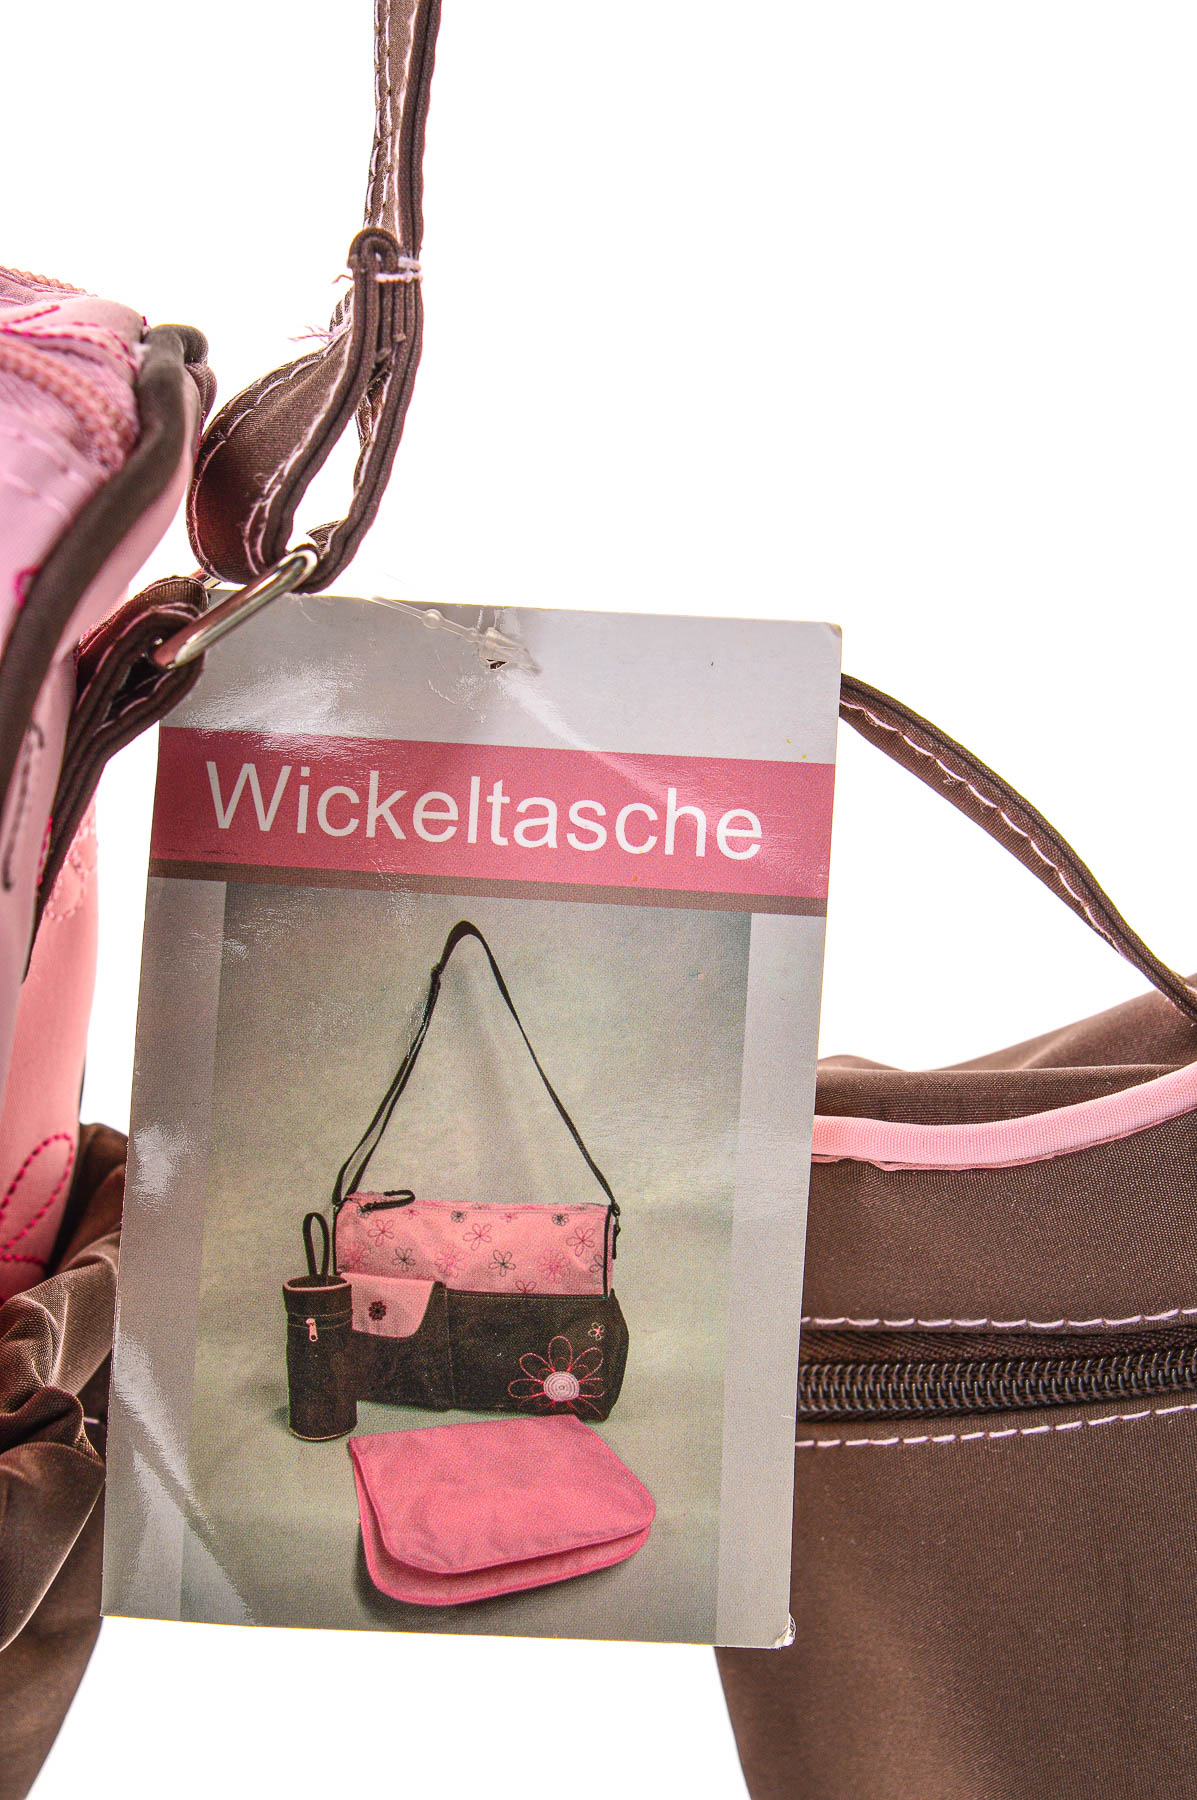 Τσάντα για καρότσι - Wickeltasche - 3